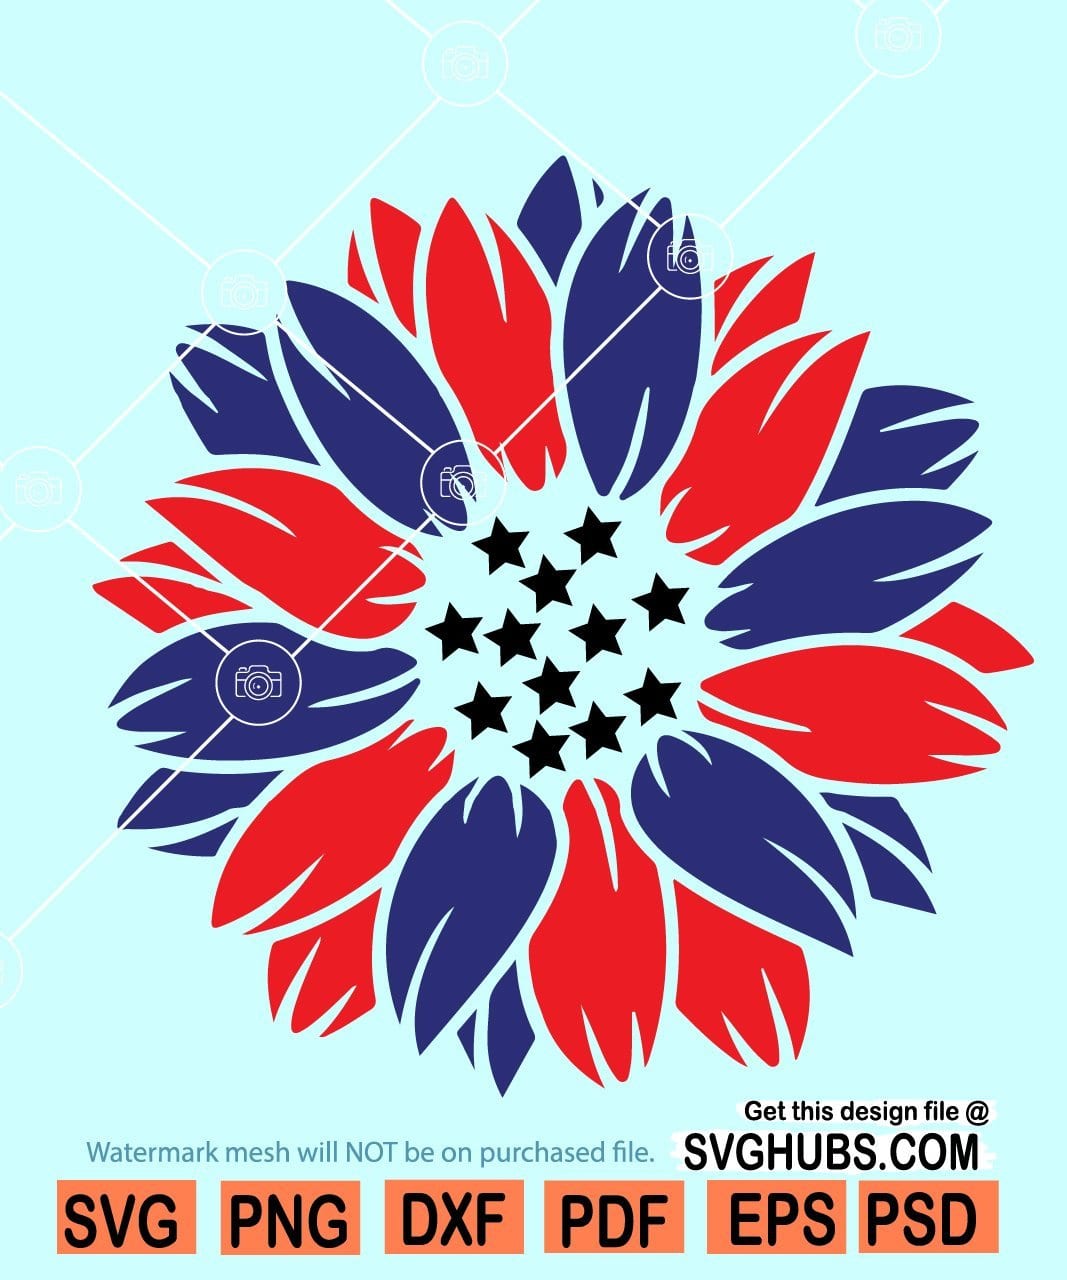 Download Patriotic Sunflower Svg American Flag Sunflower Svg 4th Of July Svg Svg Hubs